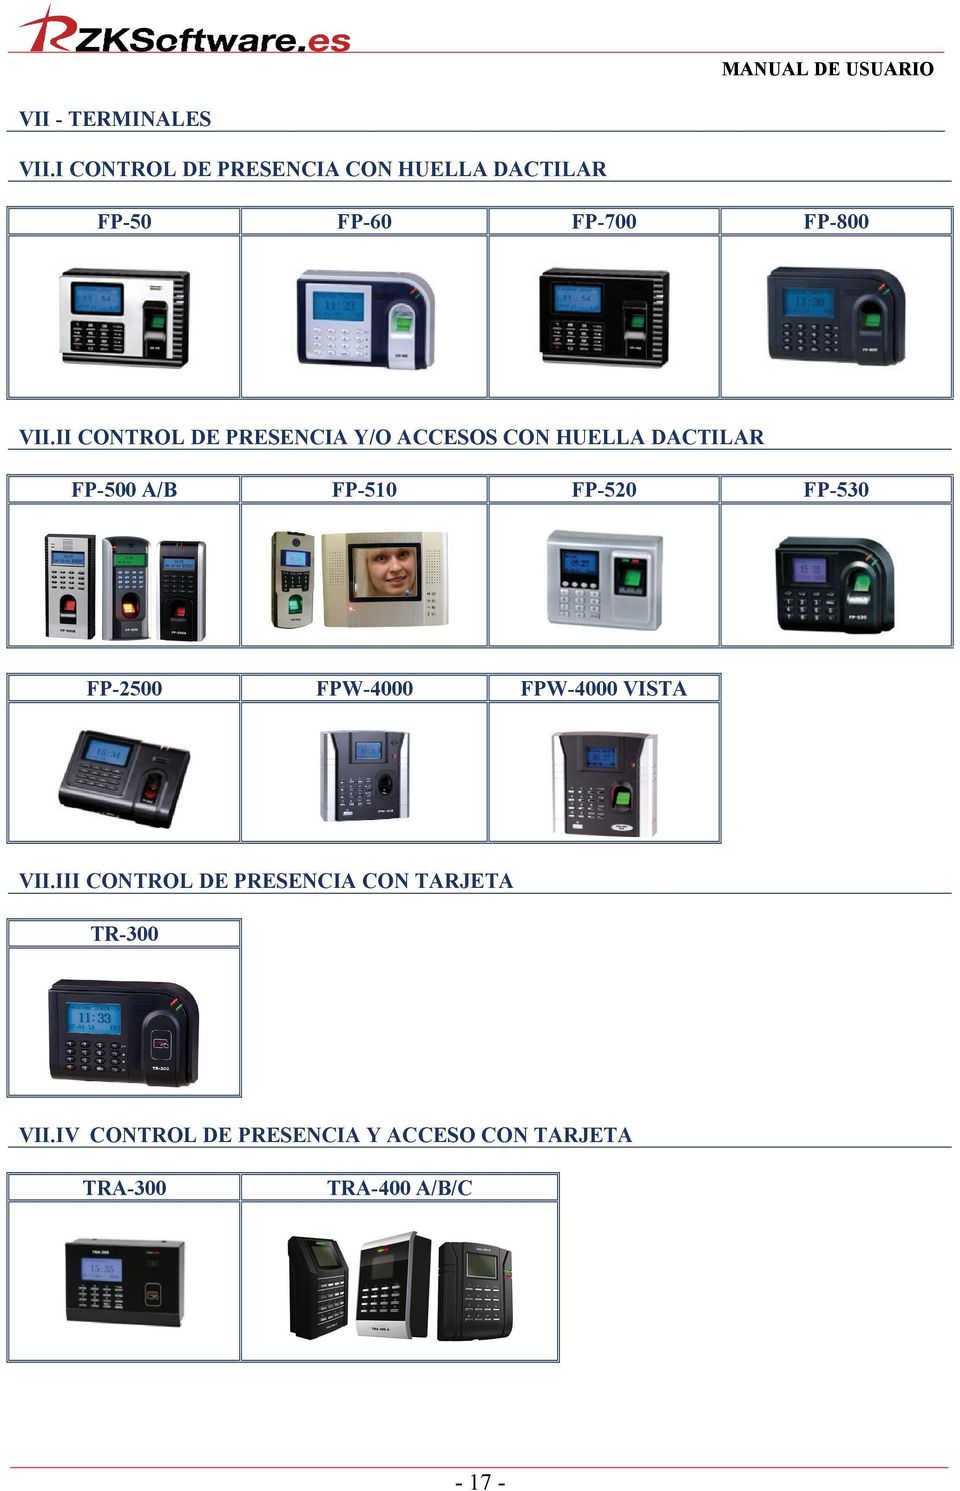 II CONTROL DE PRESENCIA Y/O ACCESOS CON HUELLA DACTILAR FP-500 A/B FP-510 FP-520